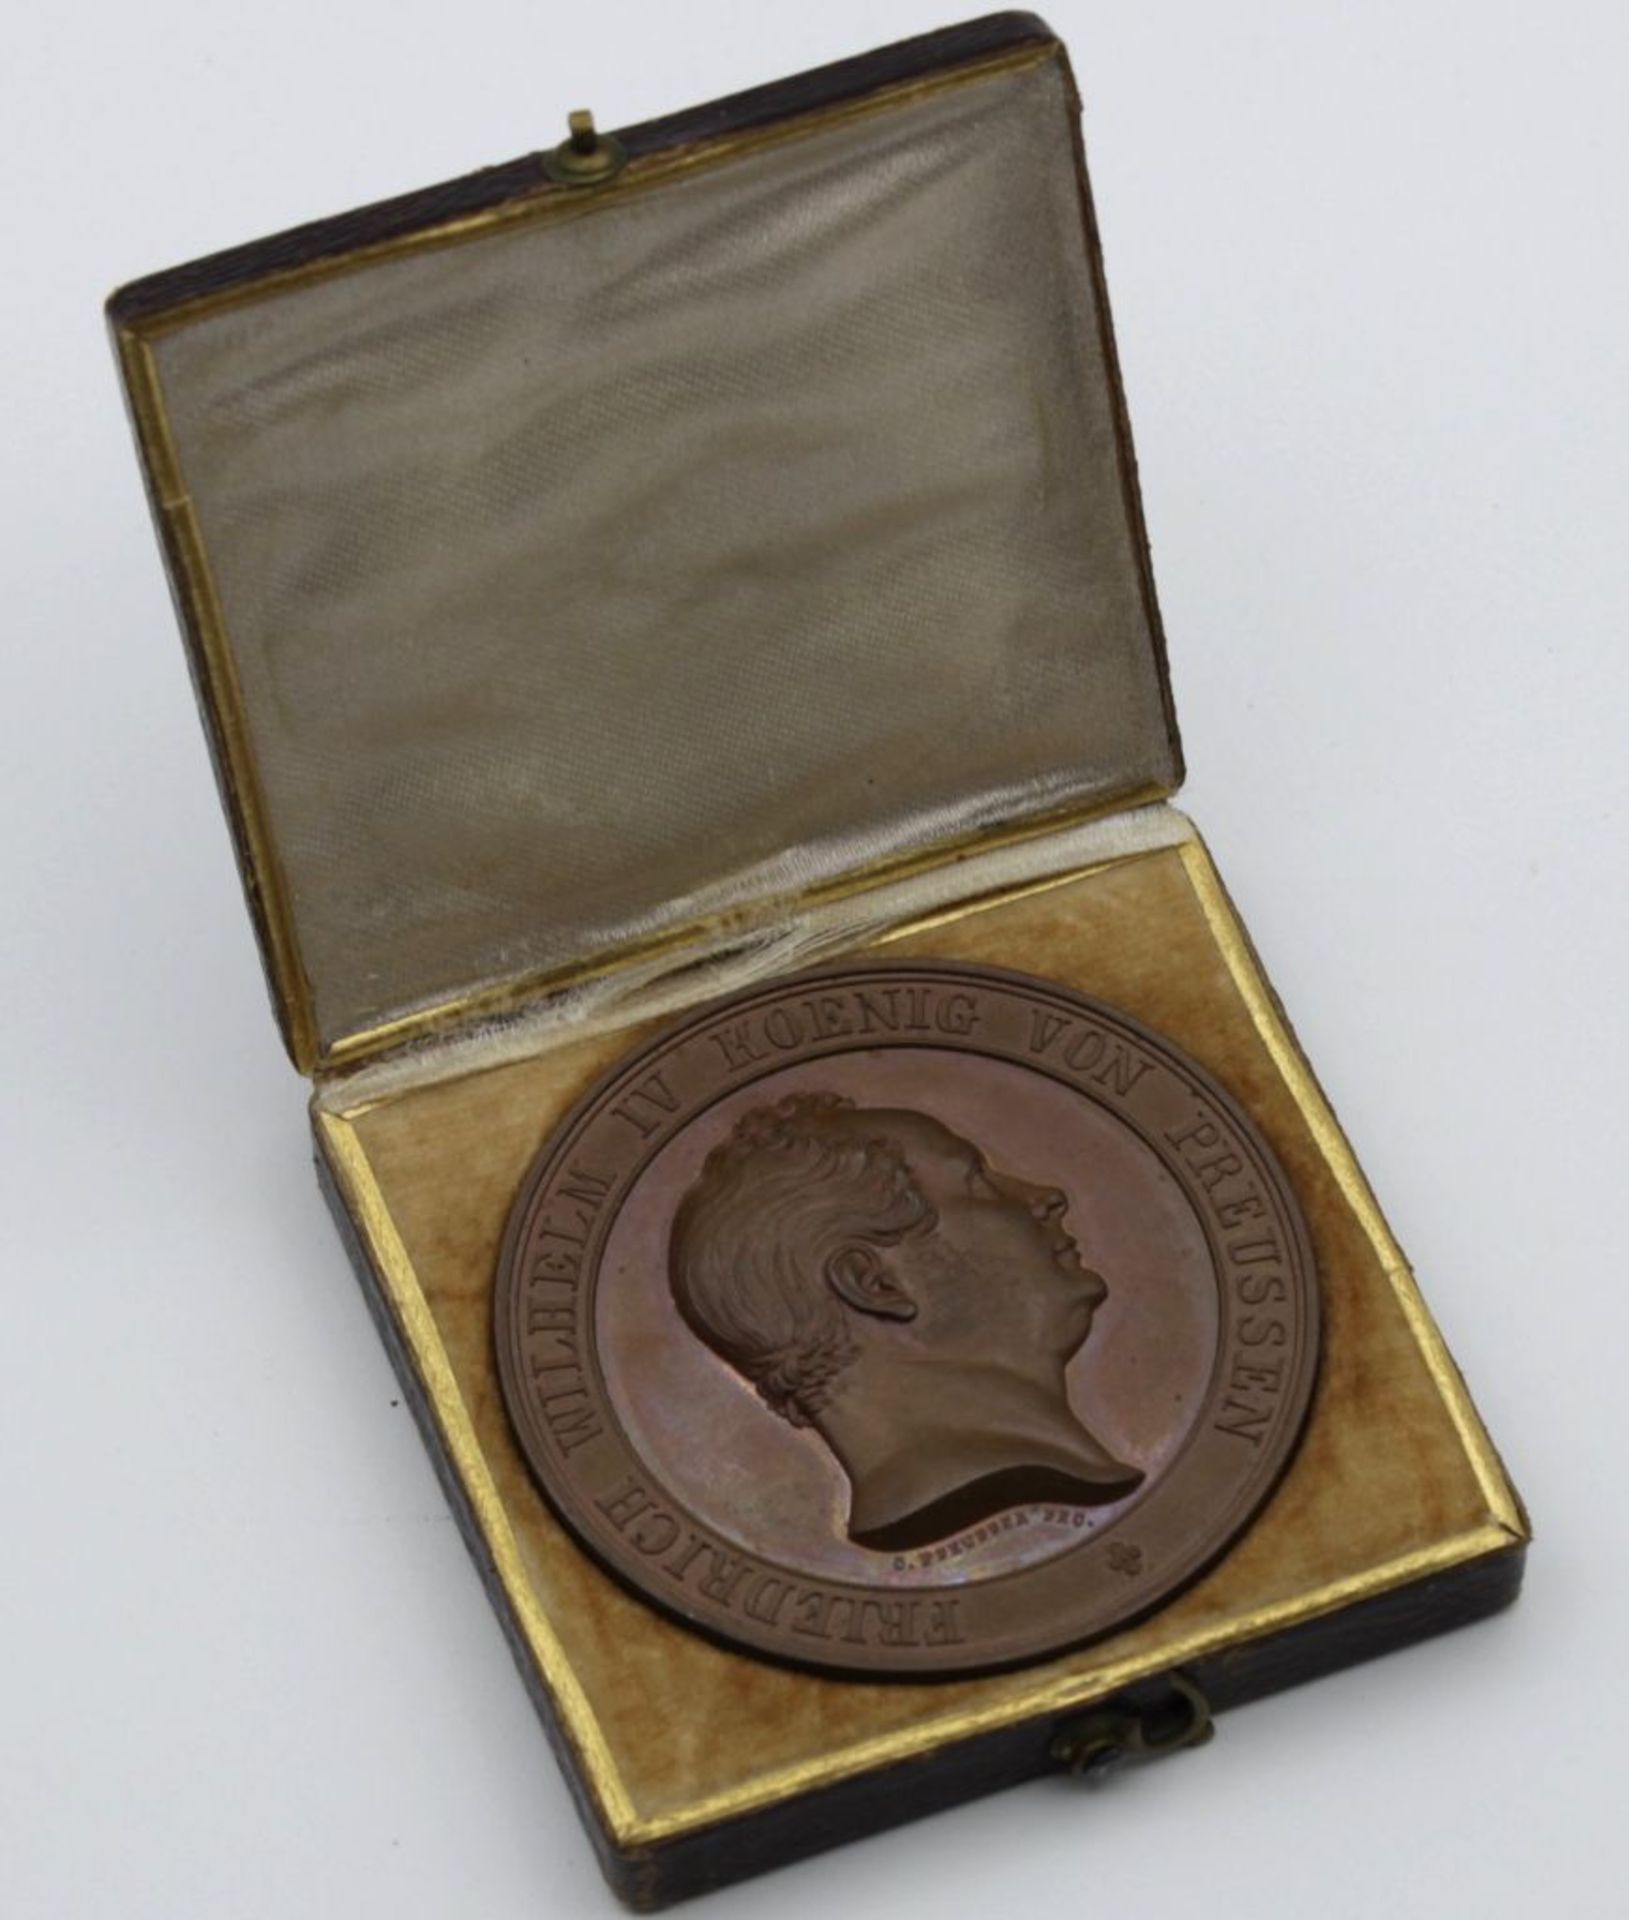 Preiss-Medaille "Ausstellung Vaterländischer Gewerbeerzeugnisse vom Jahre 1844" im Etui.- - -22.61 %